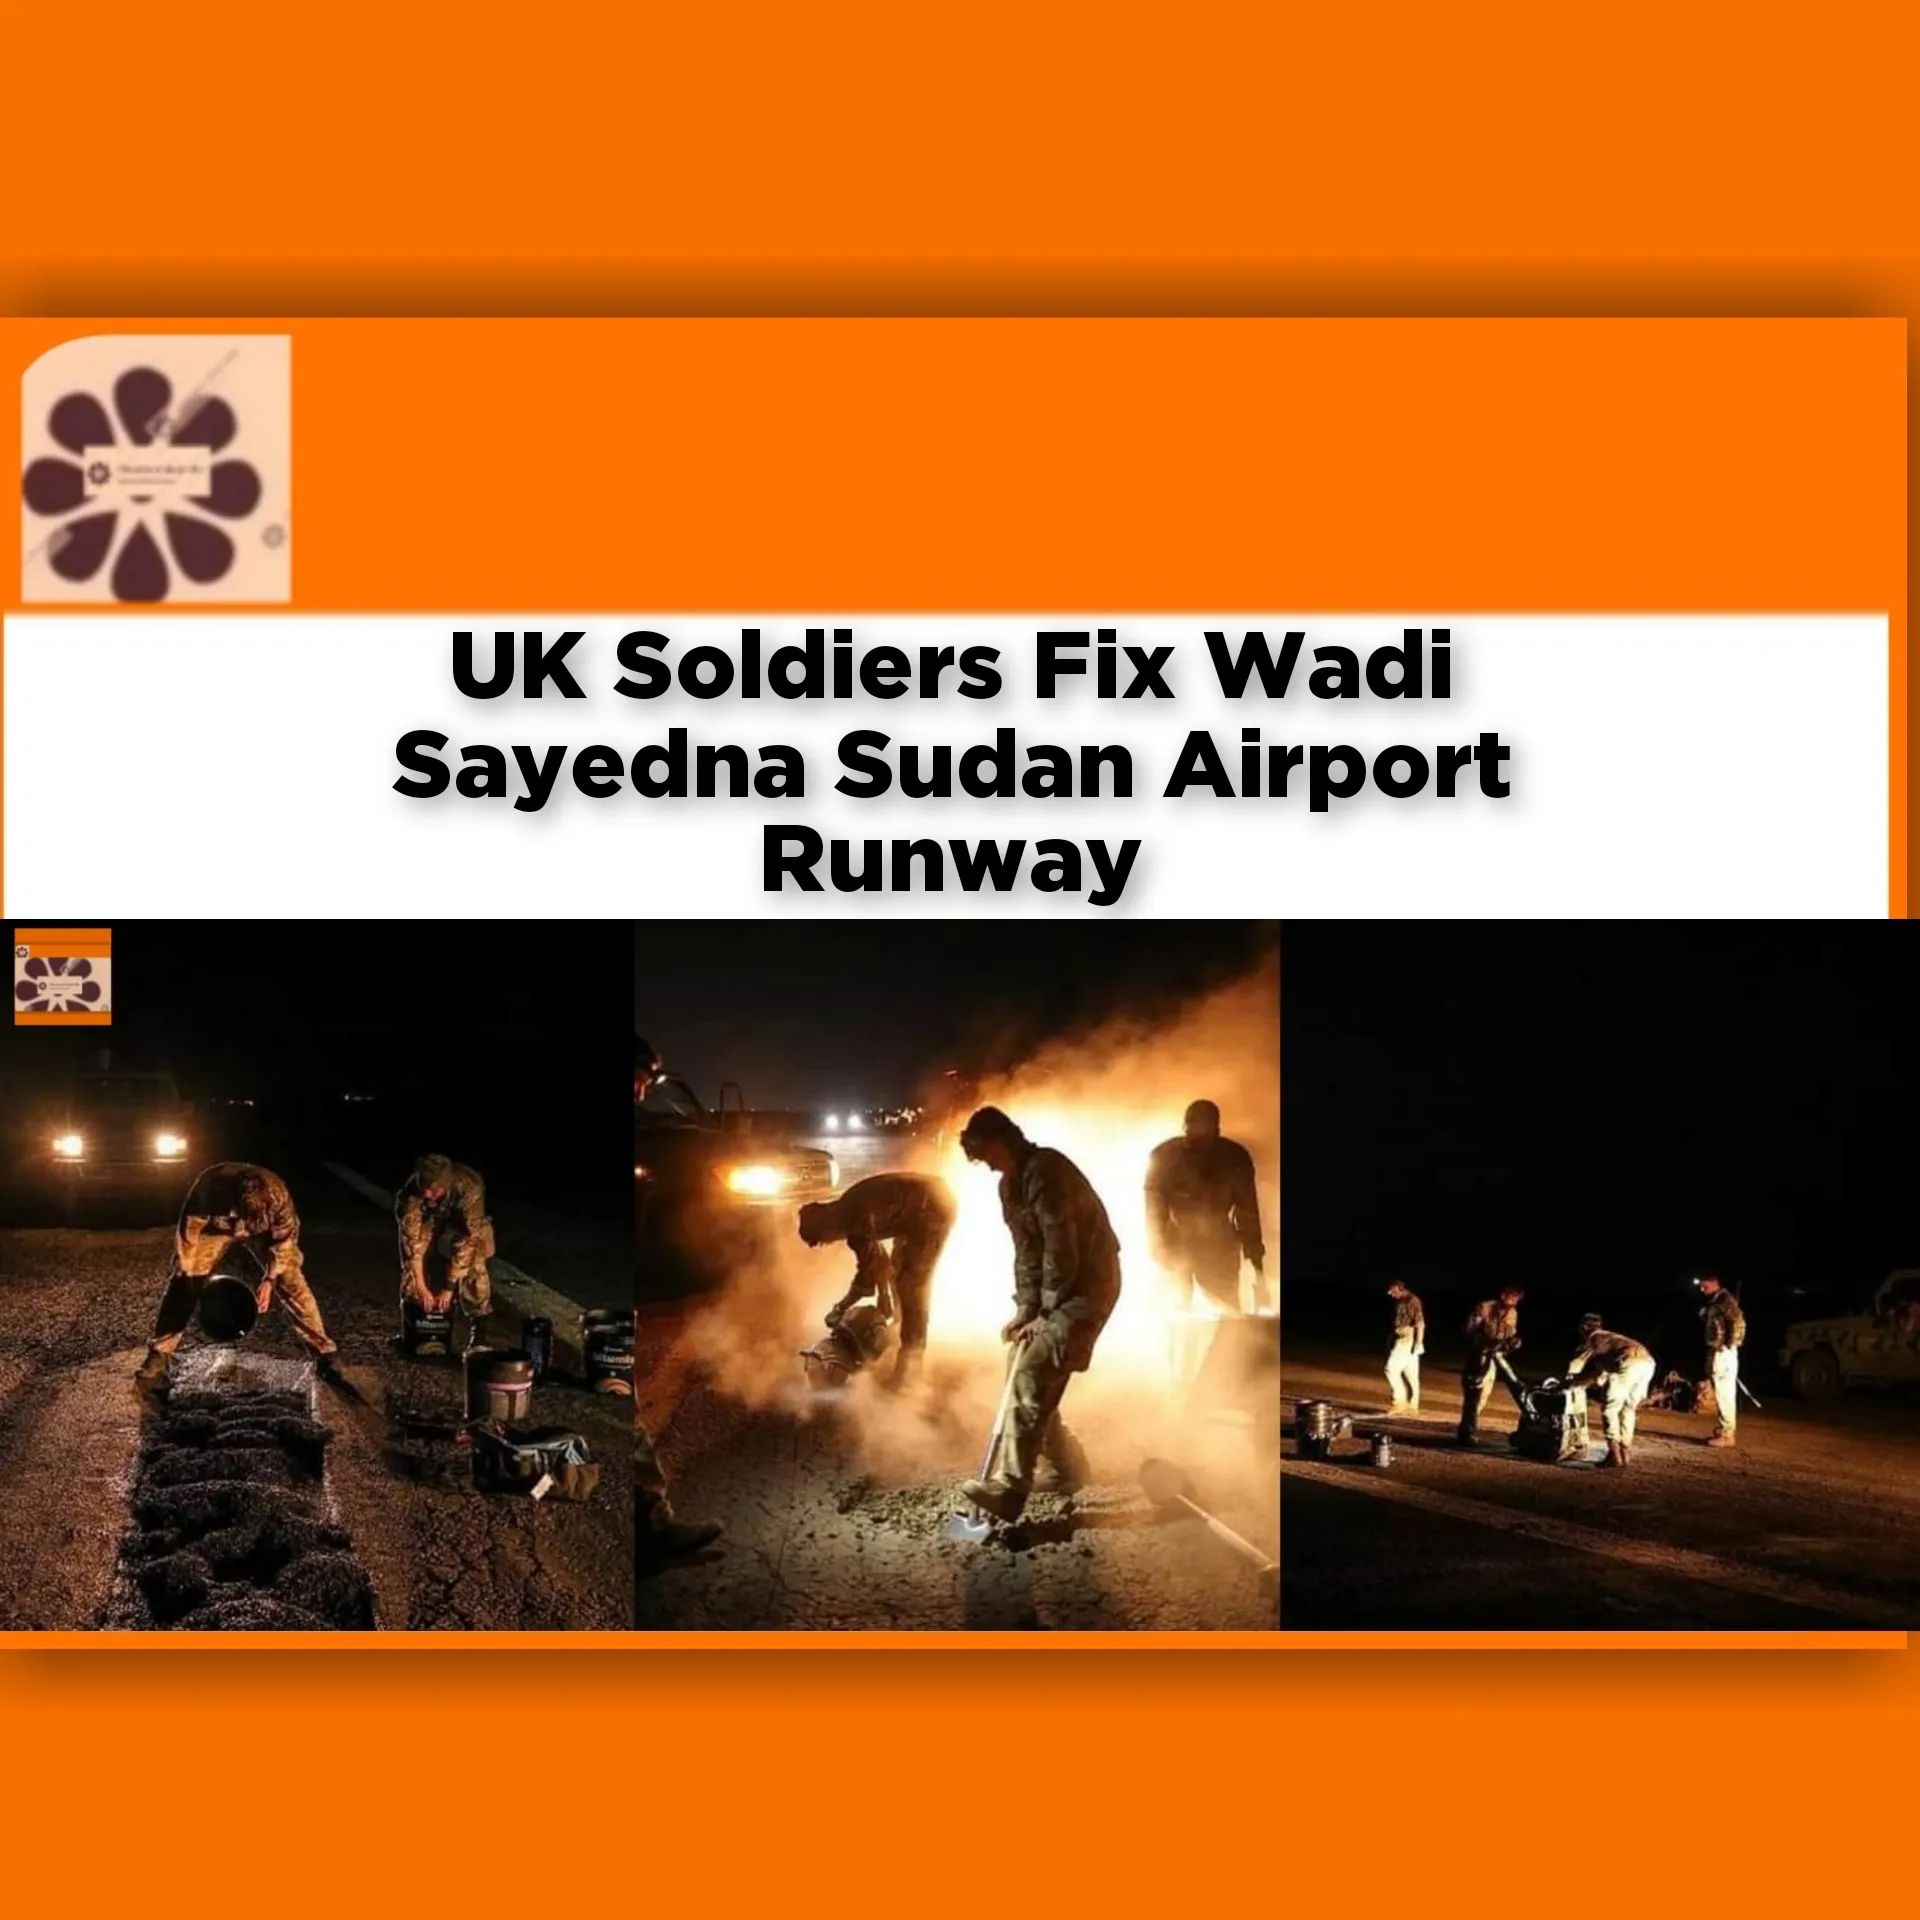 UK Soldiers Fix Wadi Sayedna Sudan Airport Runway ~ OsazuwaAkonedo #Africa #Aircraft #Airport #Khartoum #Marines #military #North #Sayedna #security #soldiers #state #Sudan #UK #Wadi #war